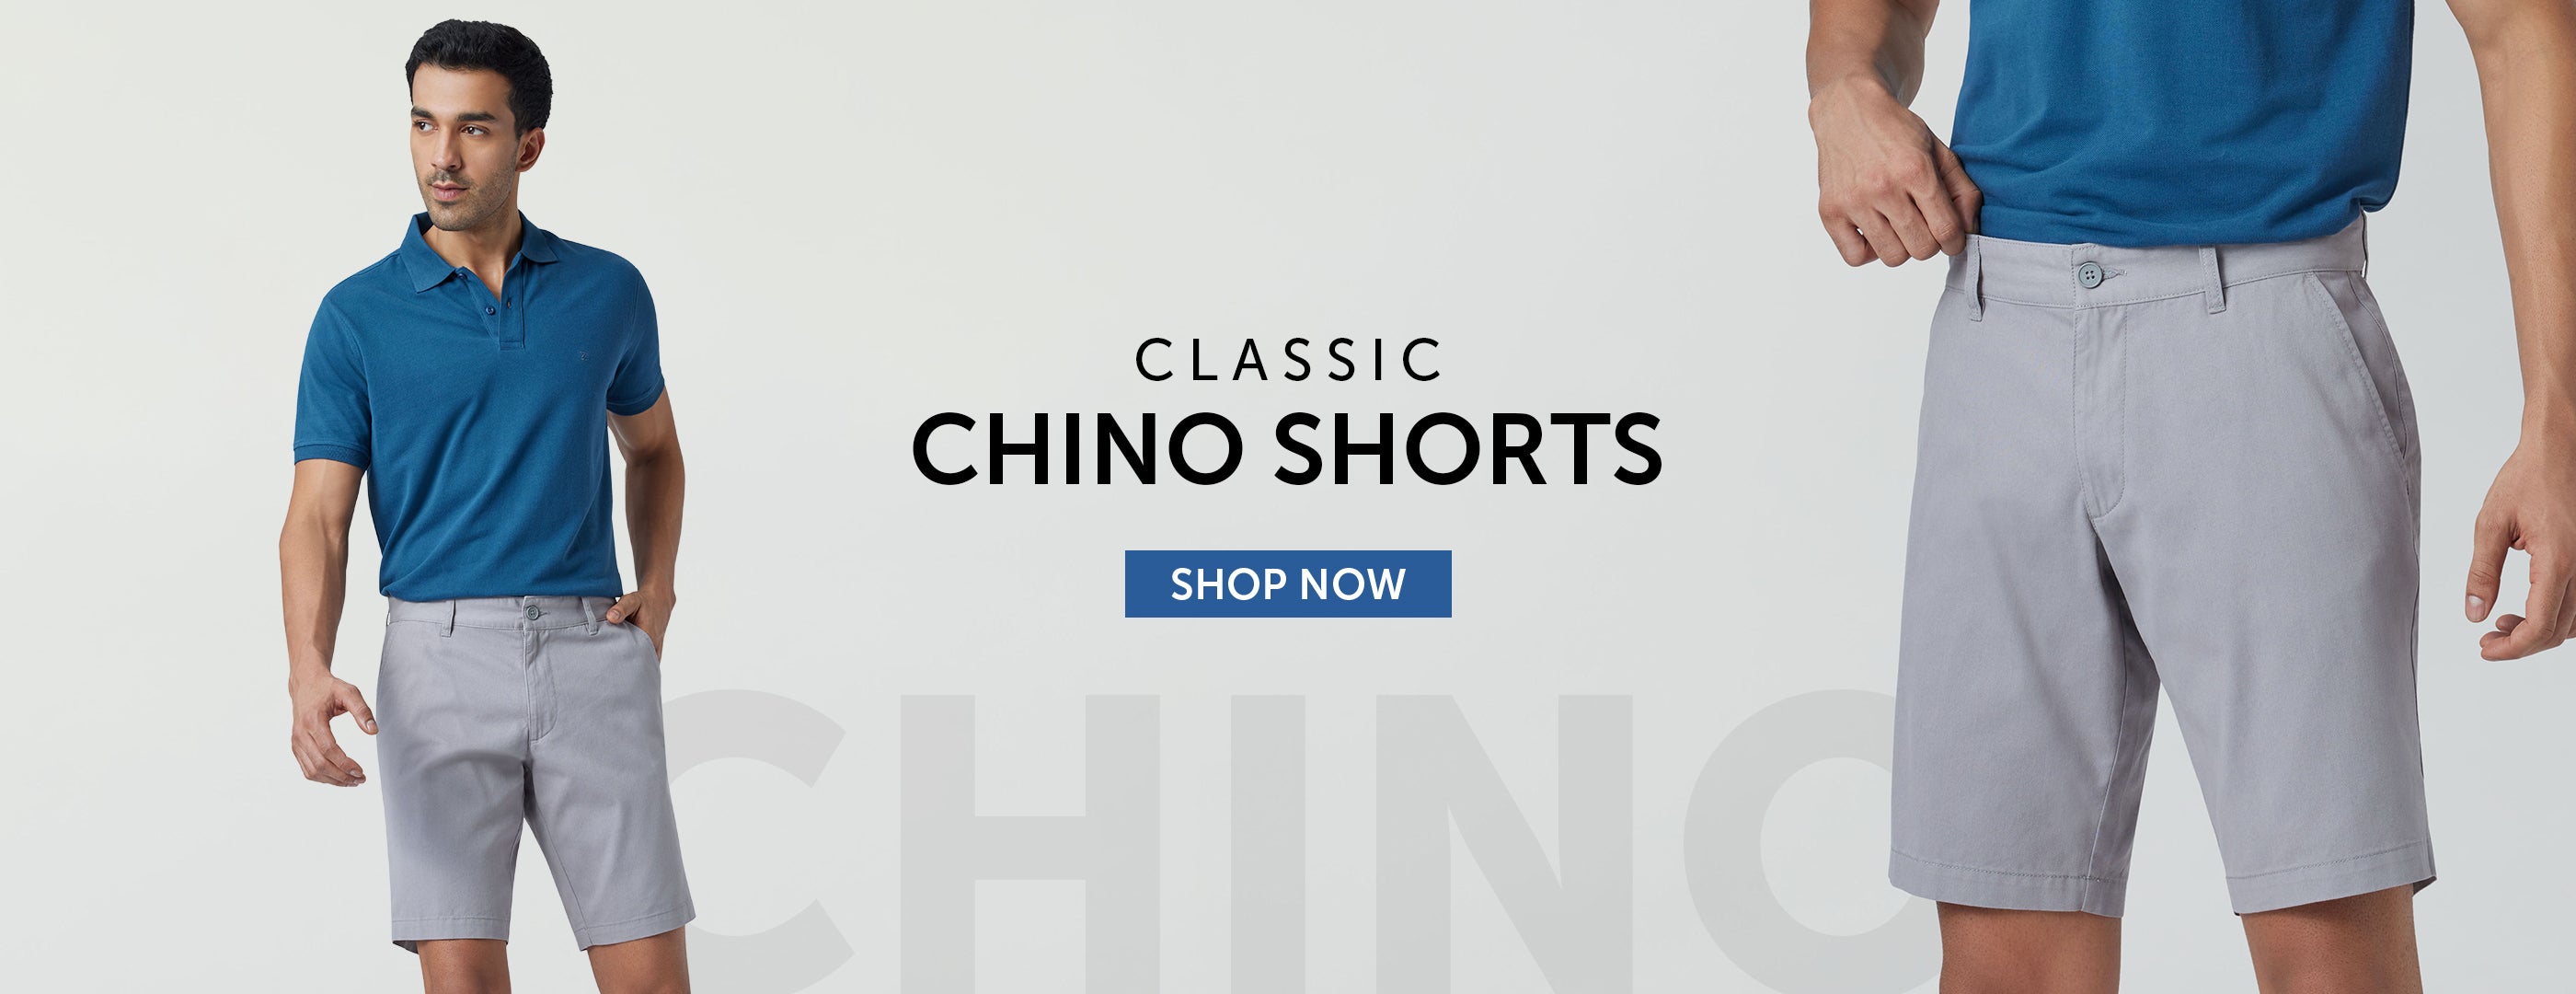 homepage-banner-classic-chino-shorts-dekstop